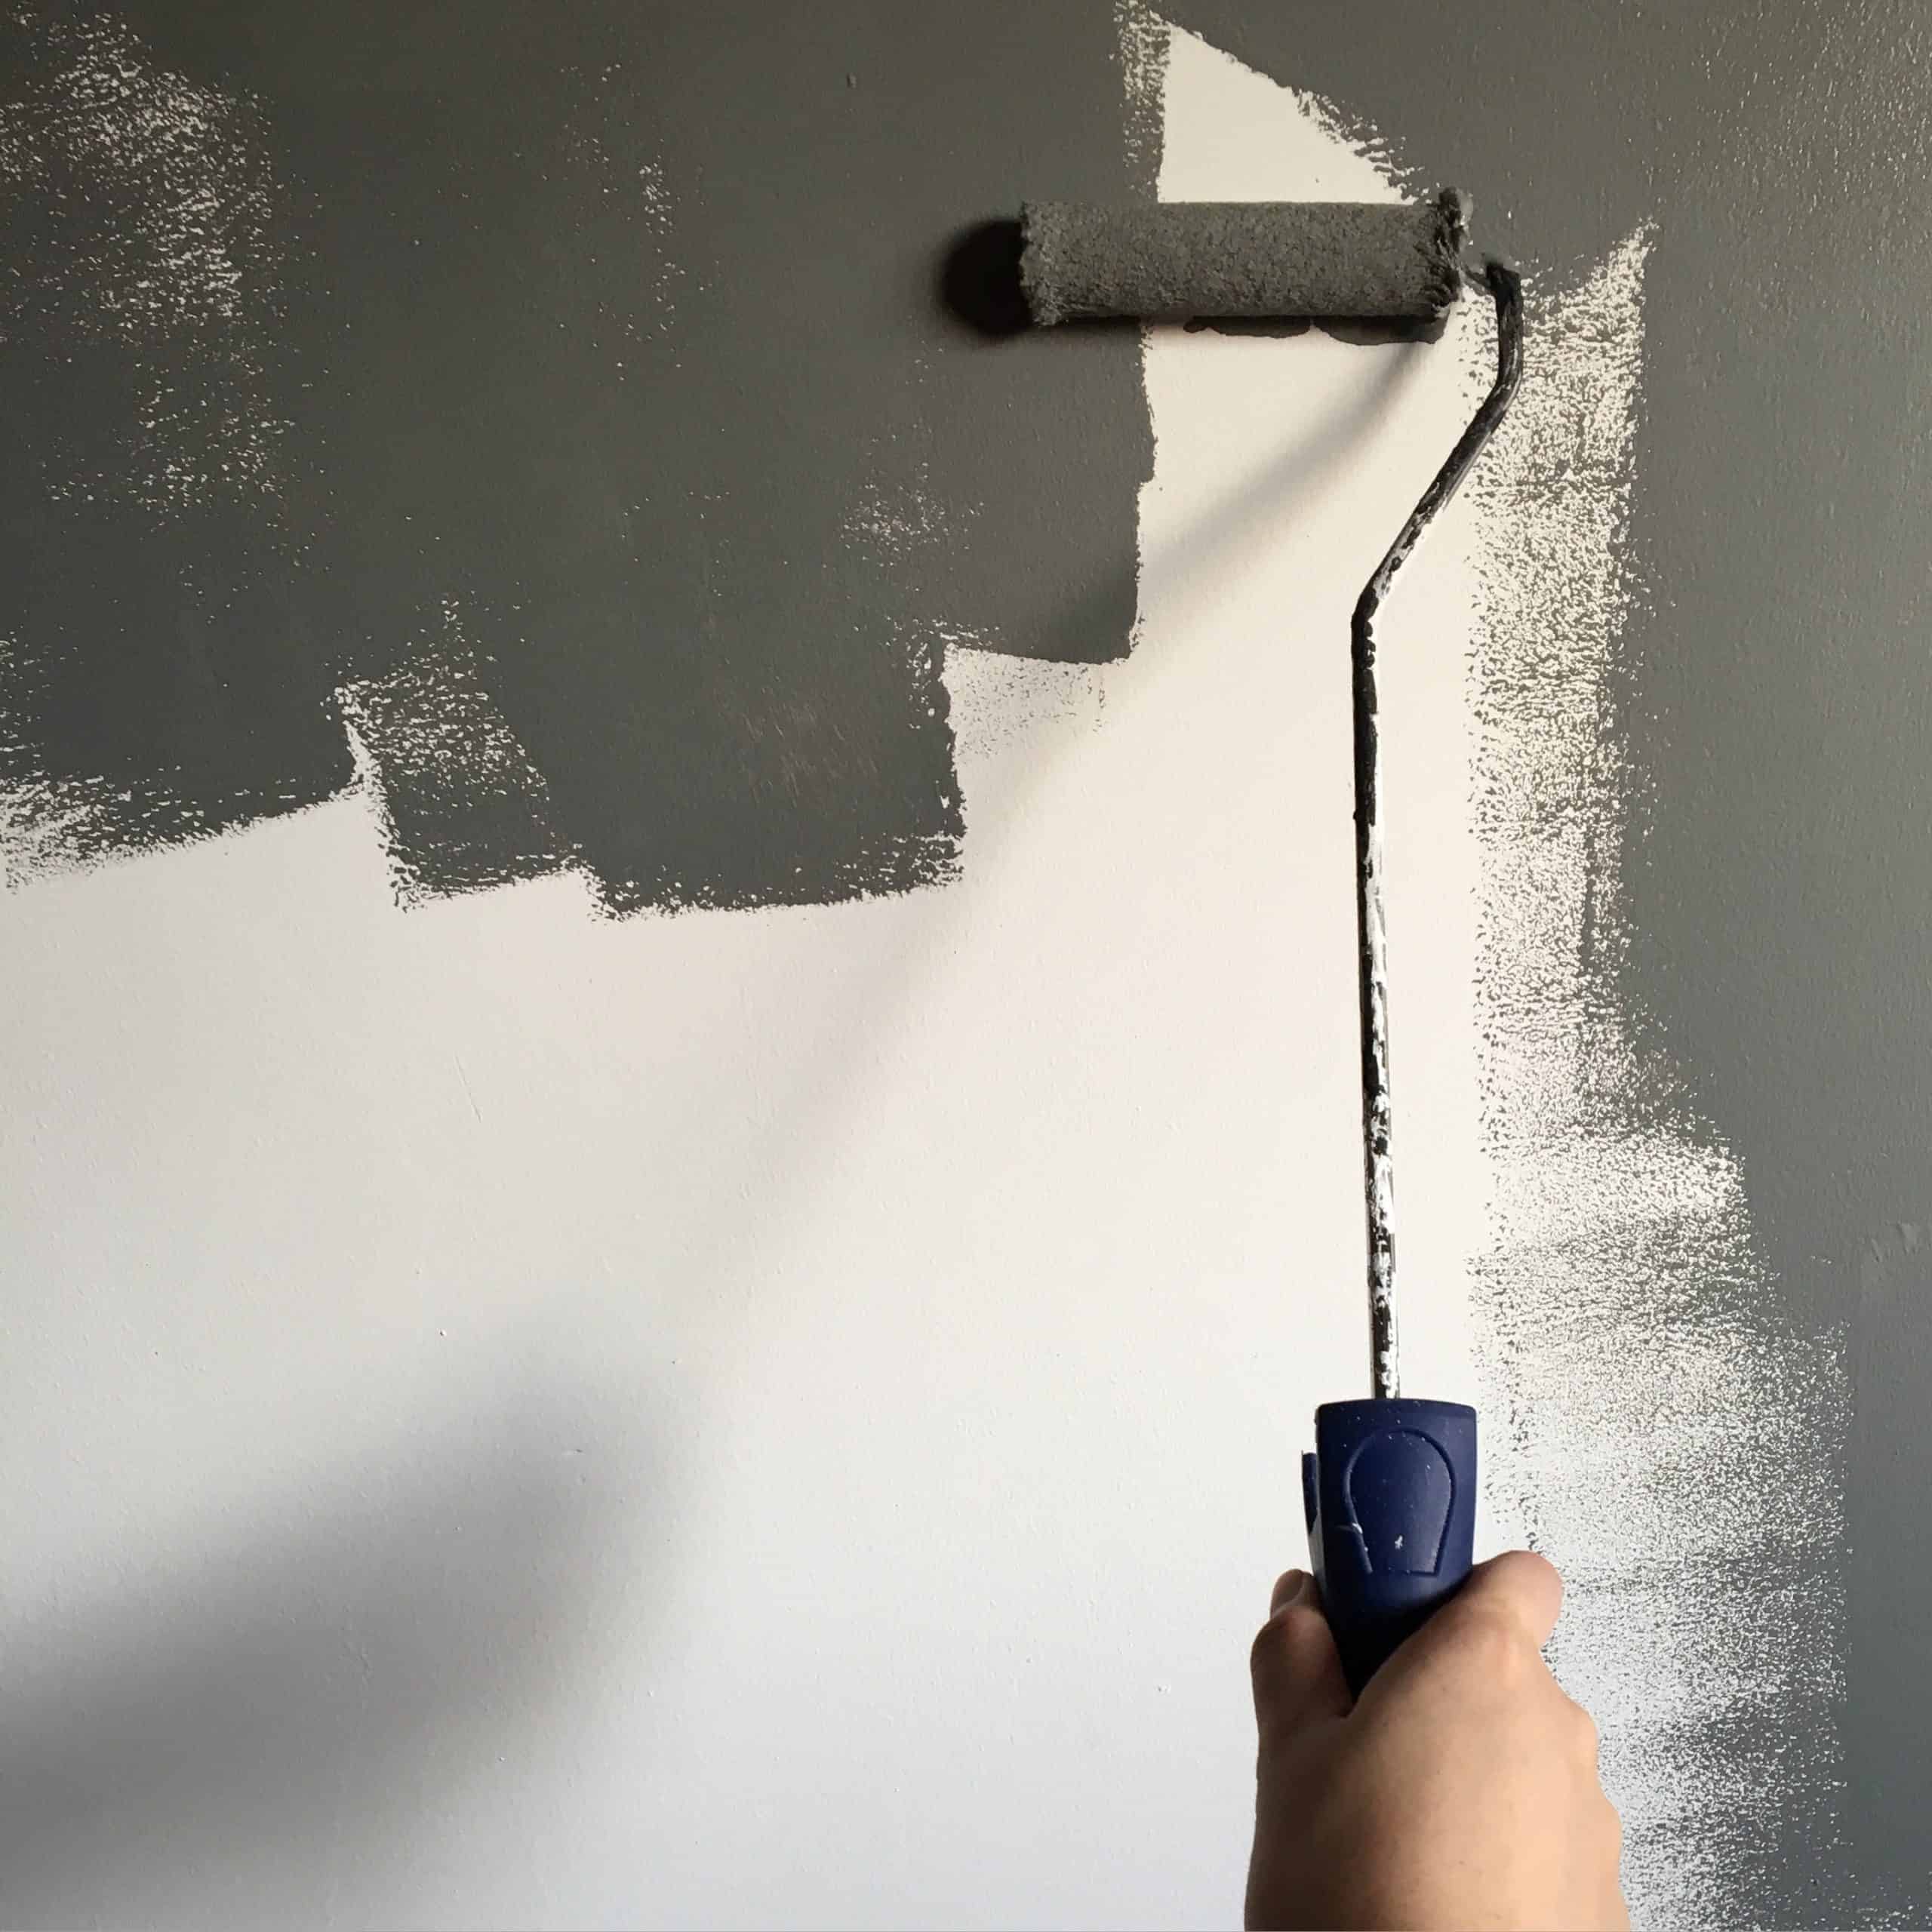 Kolor ścian do sypialni – jaki wybrać?